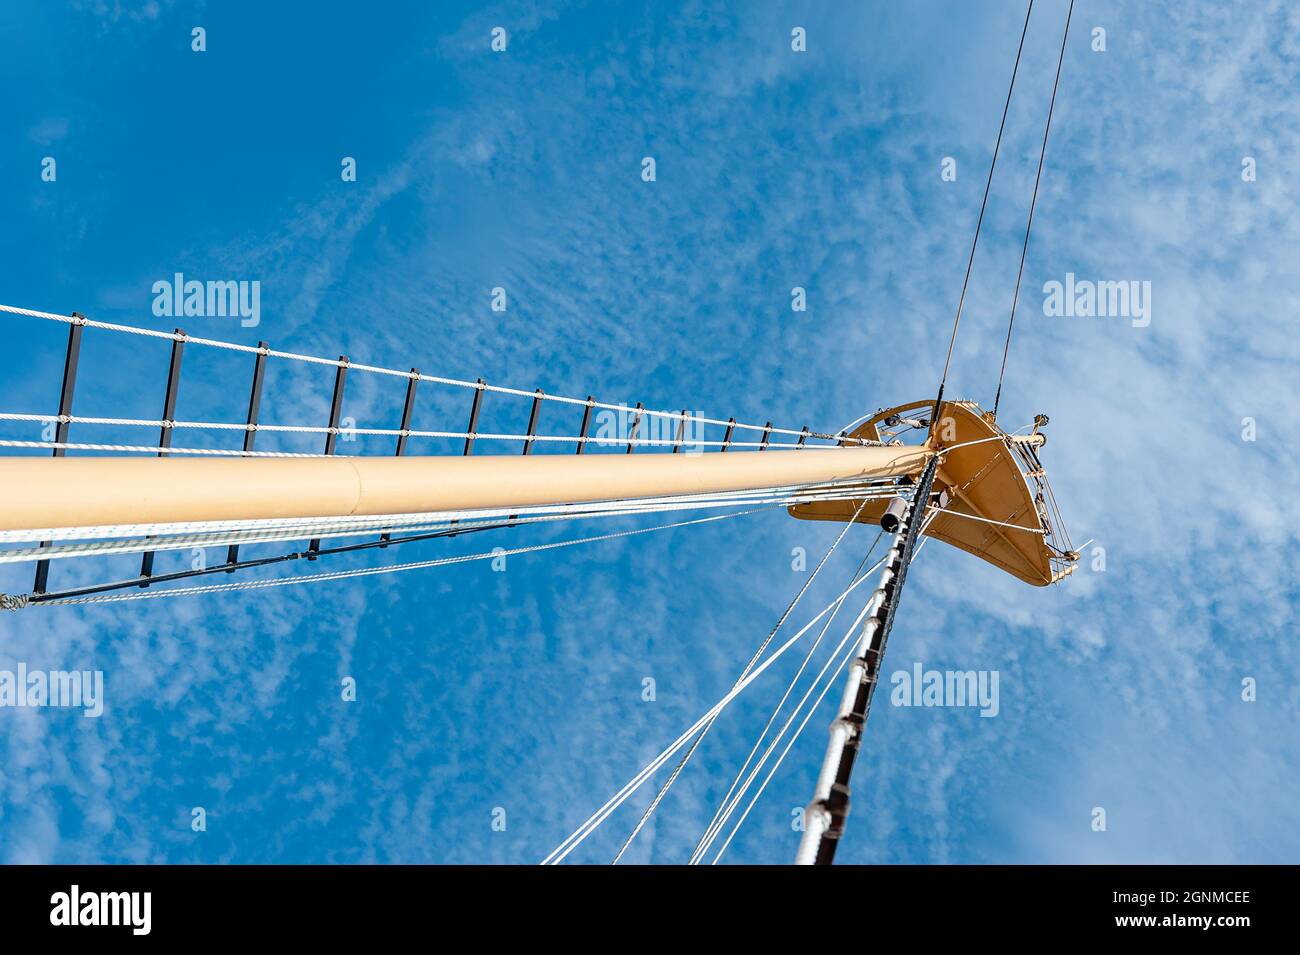 Détails d'un voilier en bois historique contre un ciel sans nuages. Une poulie avec les cordes d'un bateau à voile classique et un fond bleu ciel Banque D'Images